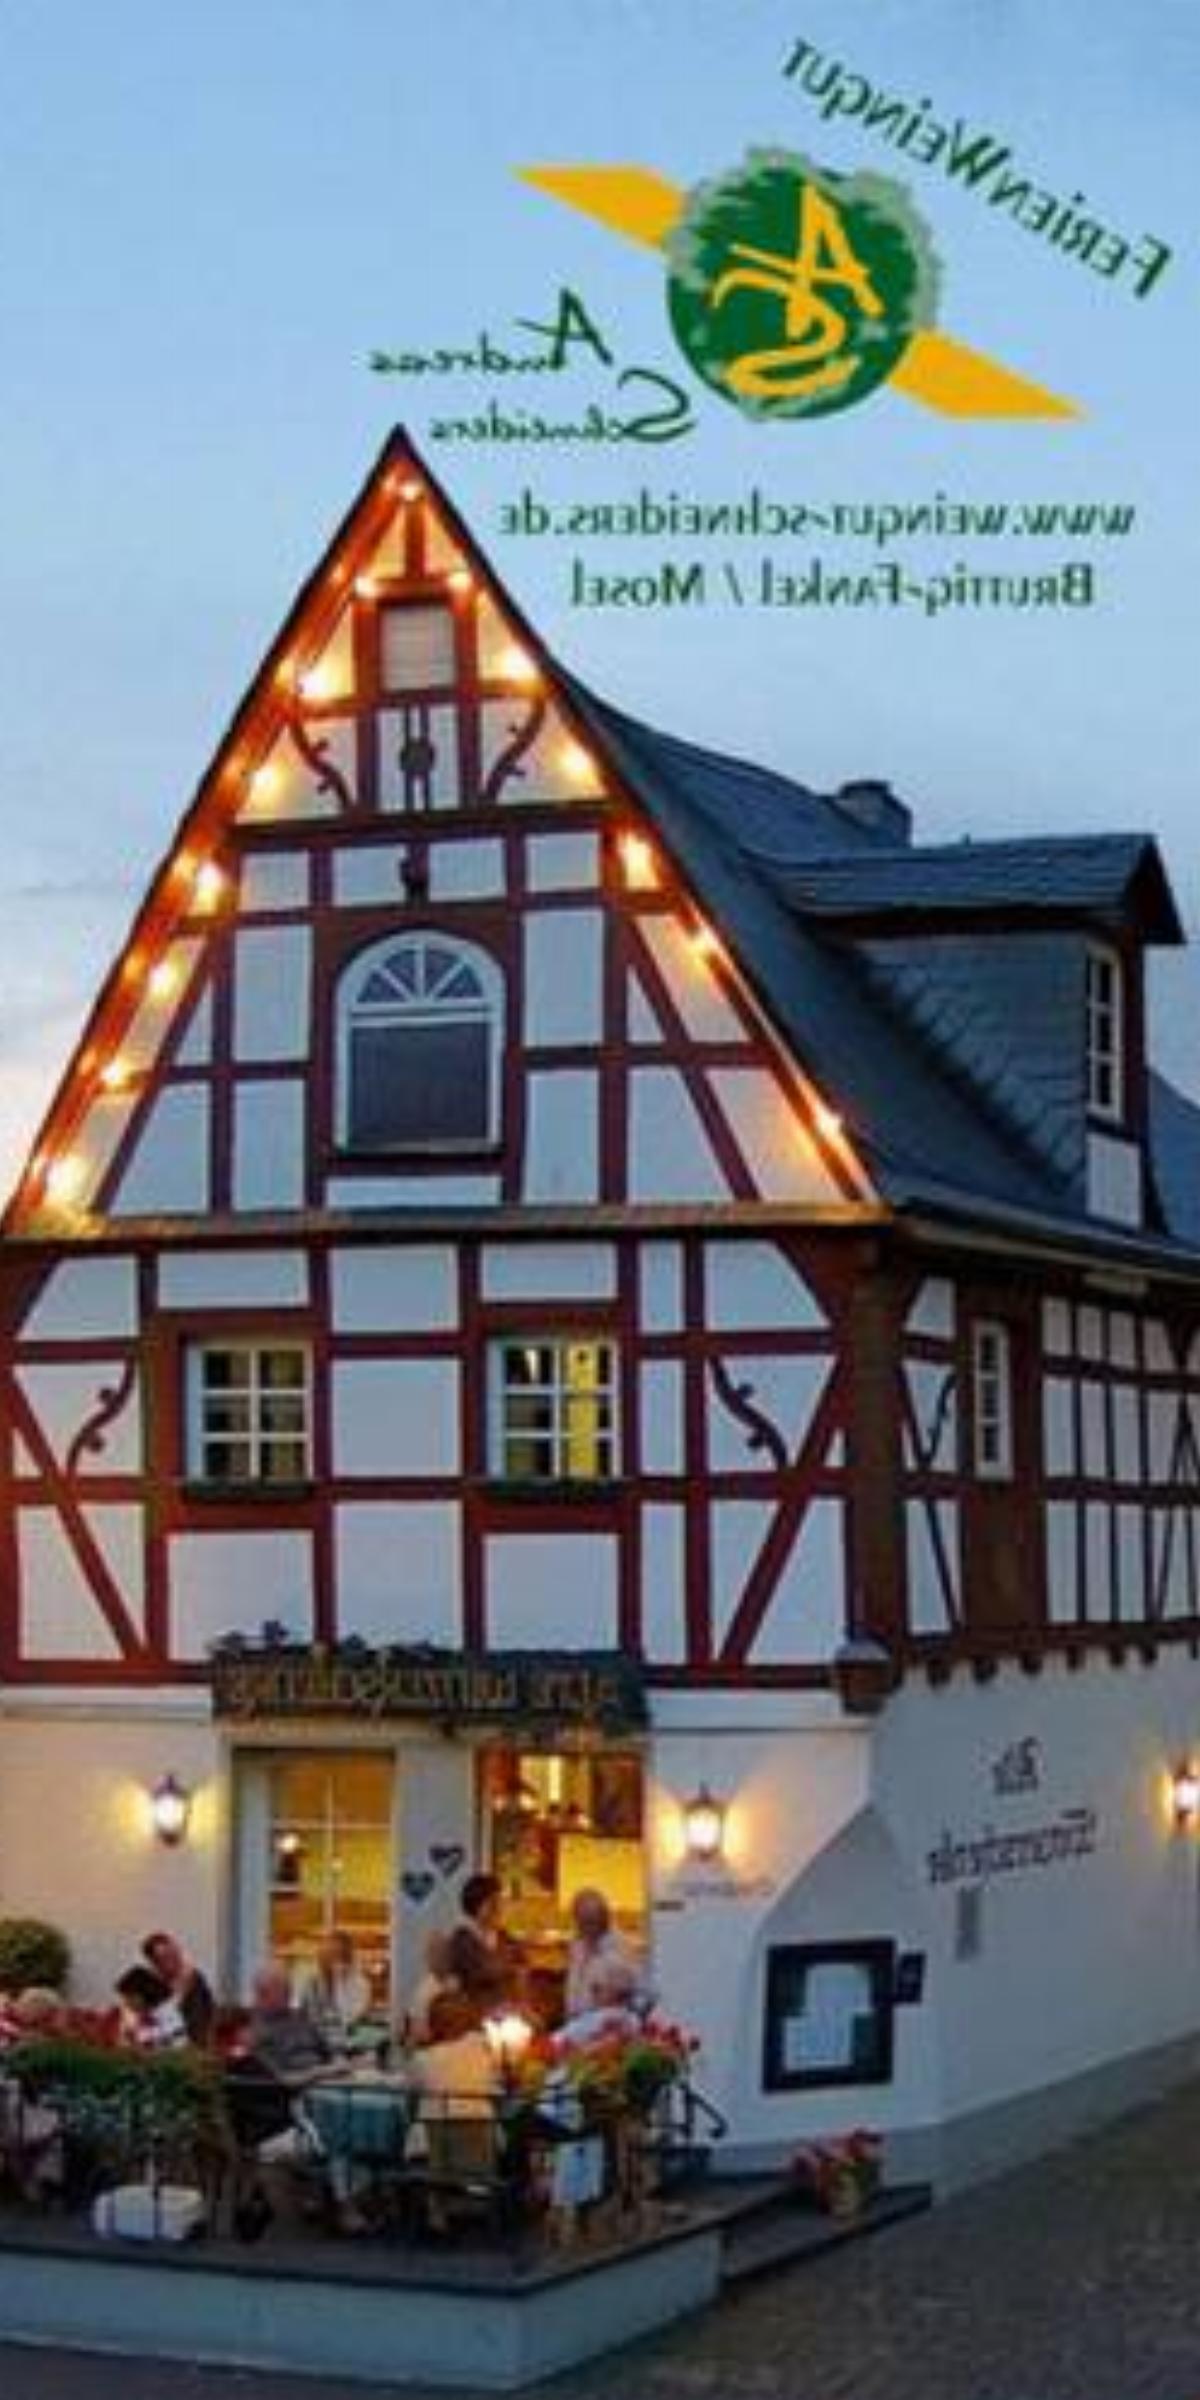 Alte Winzerschenke Hotel Bruttig-Fankel Germany